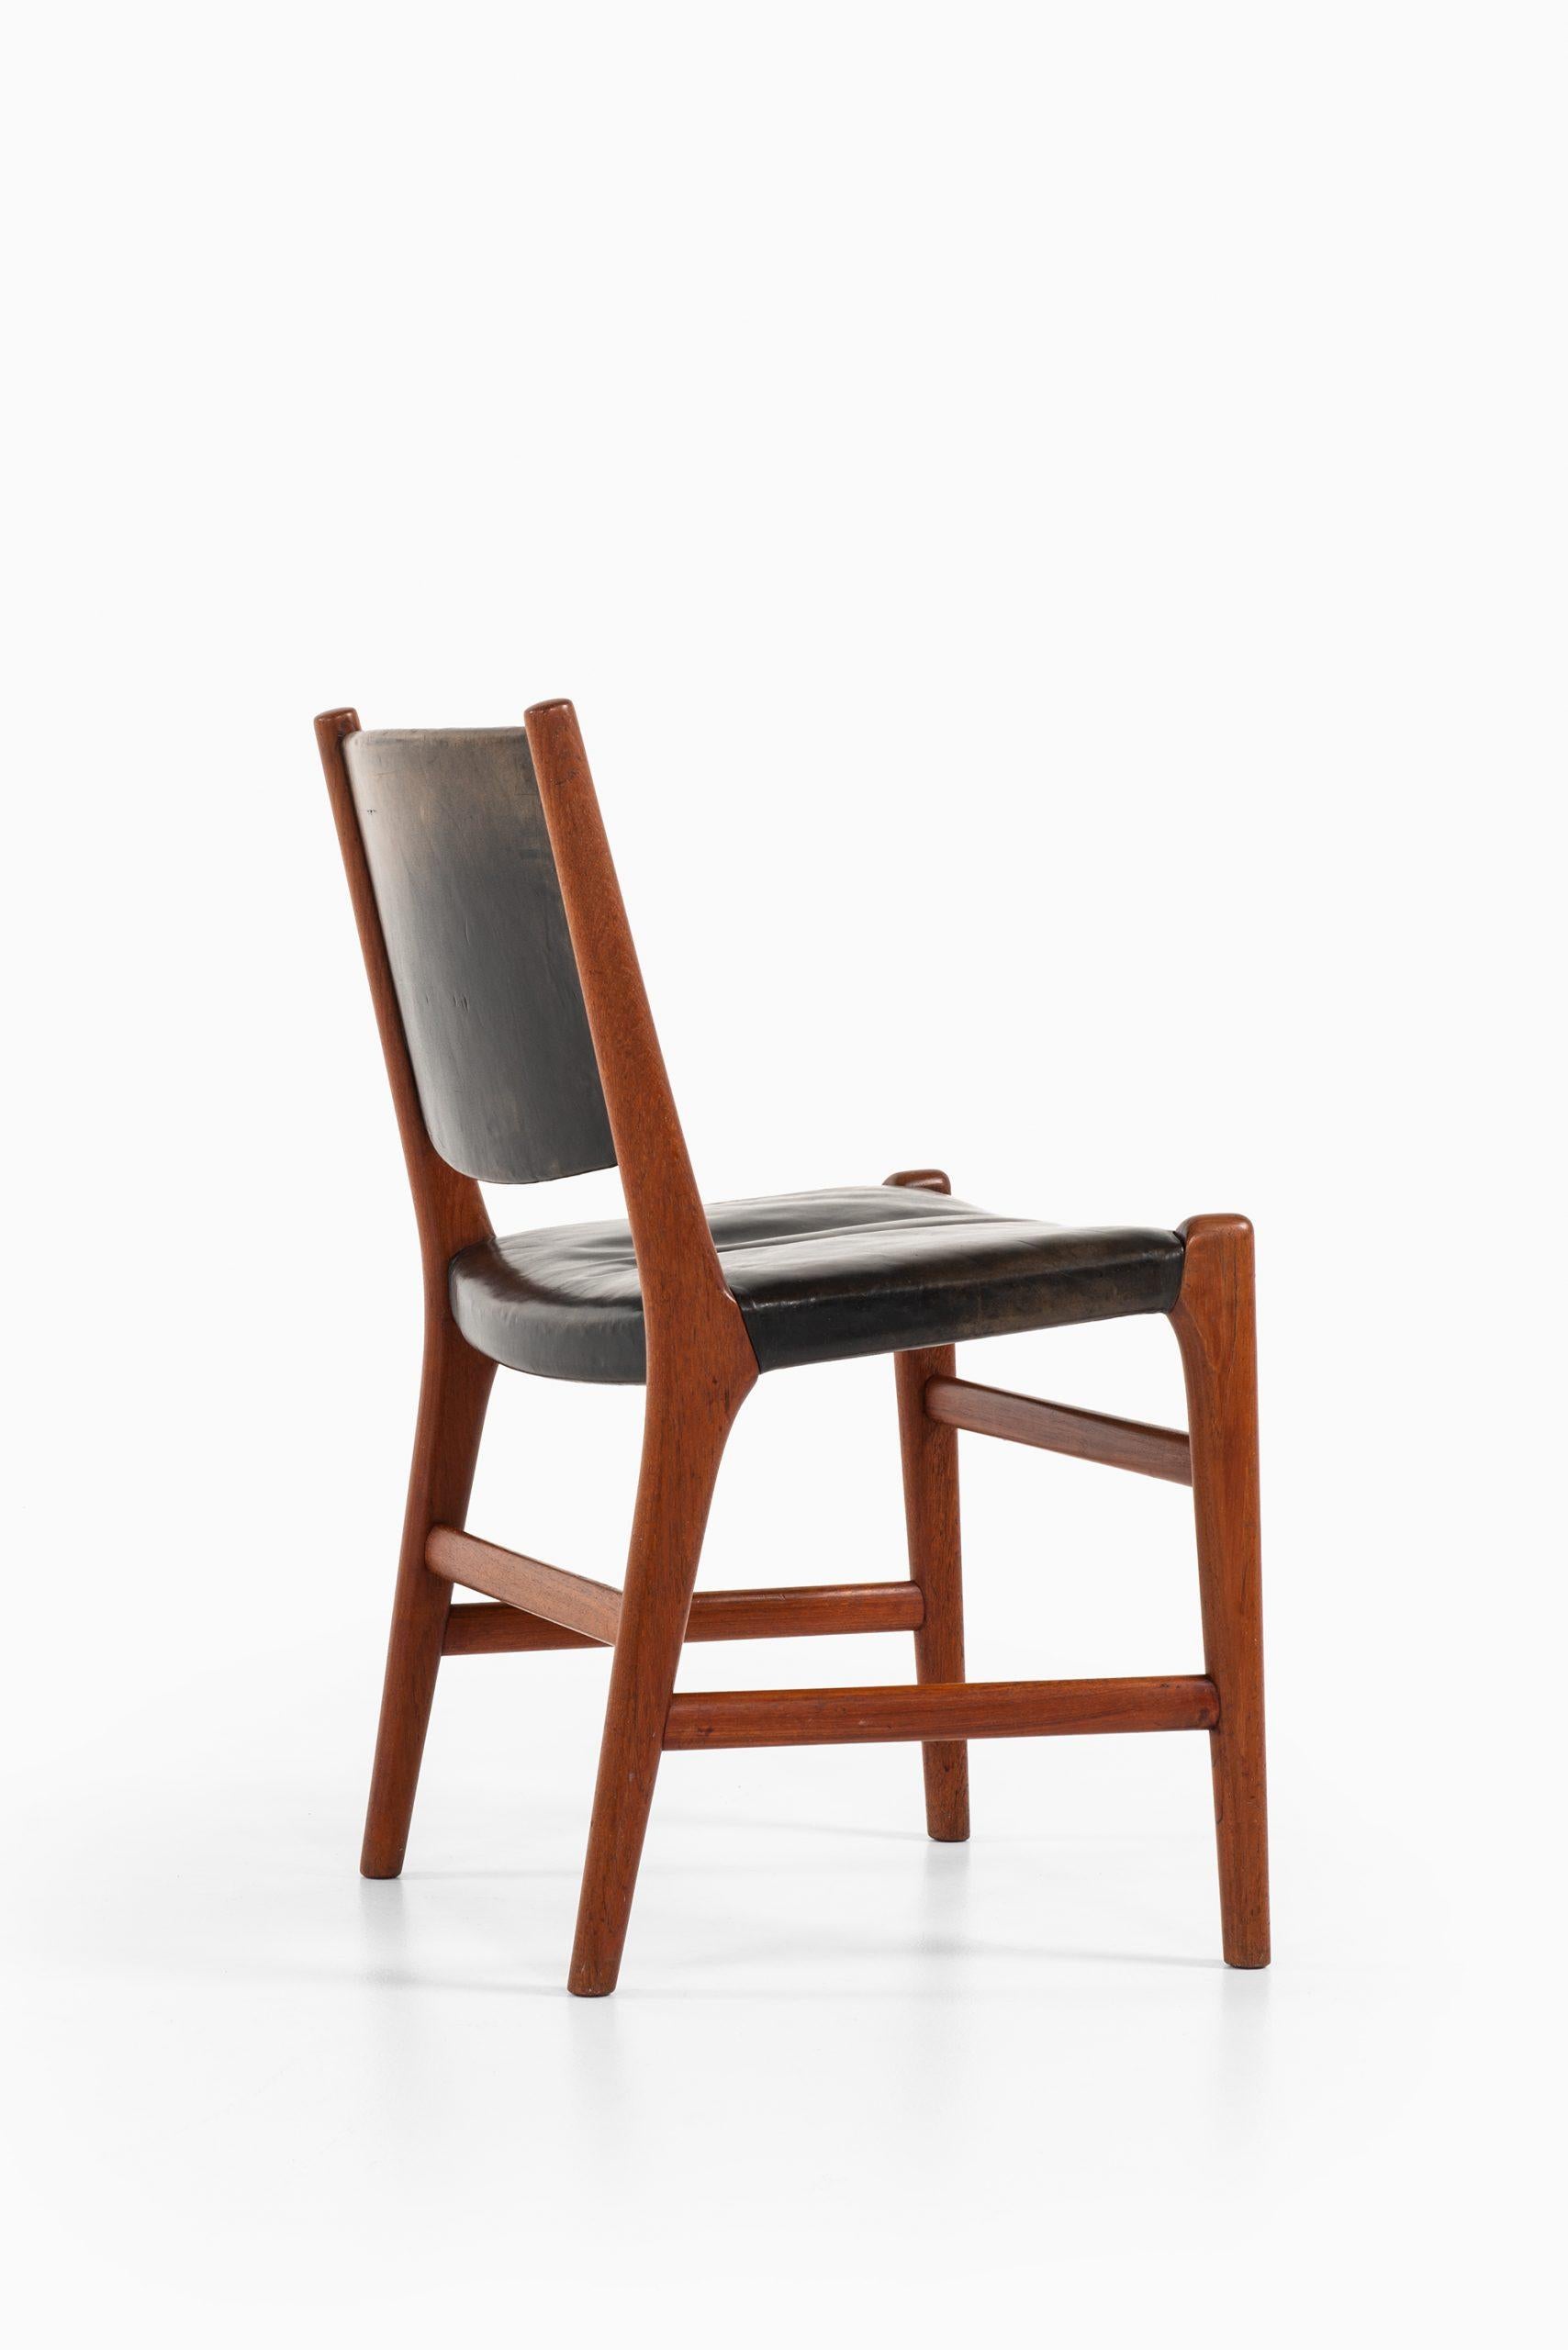 Scandinavian Modern Hans Wegner Dining Chairs Variant of Model JH507 by Cabinetmaker Johannes Hansen For Sale